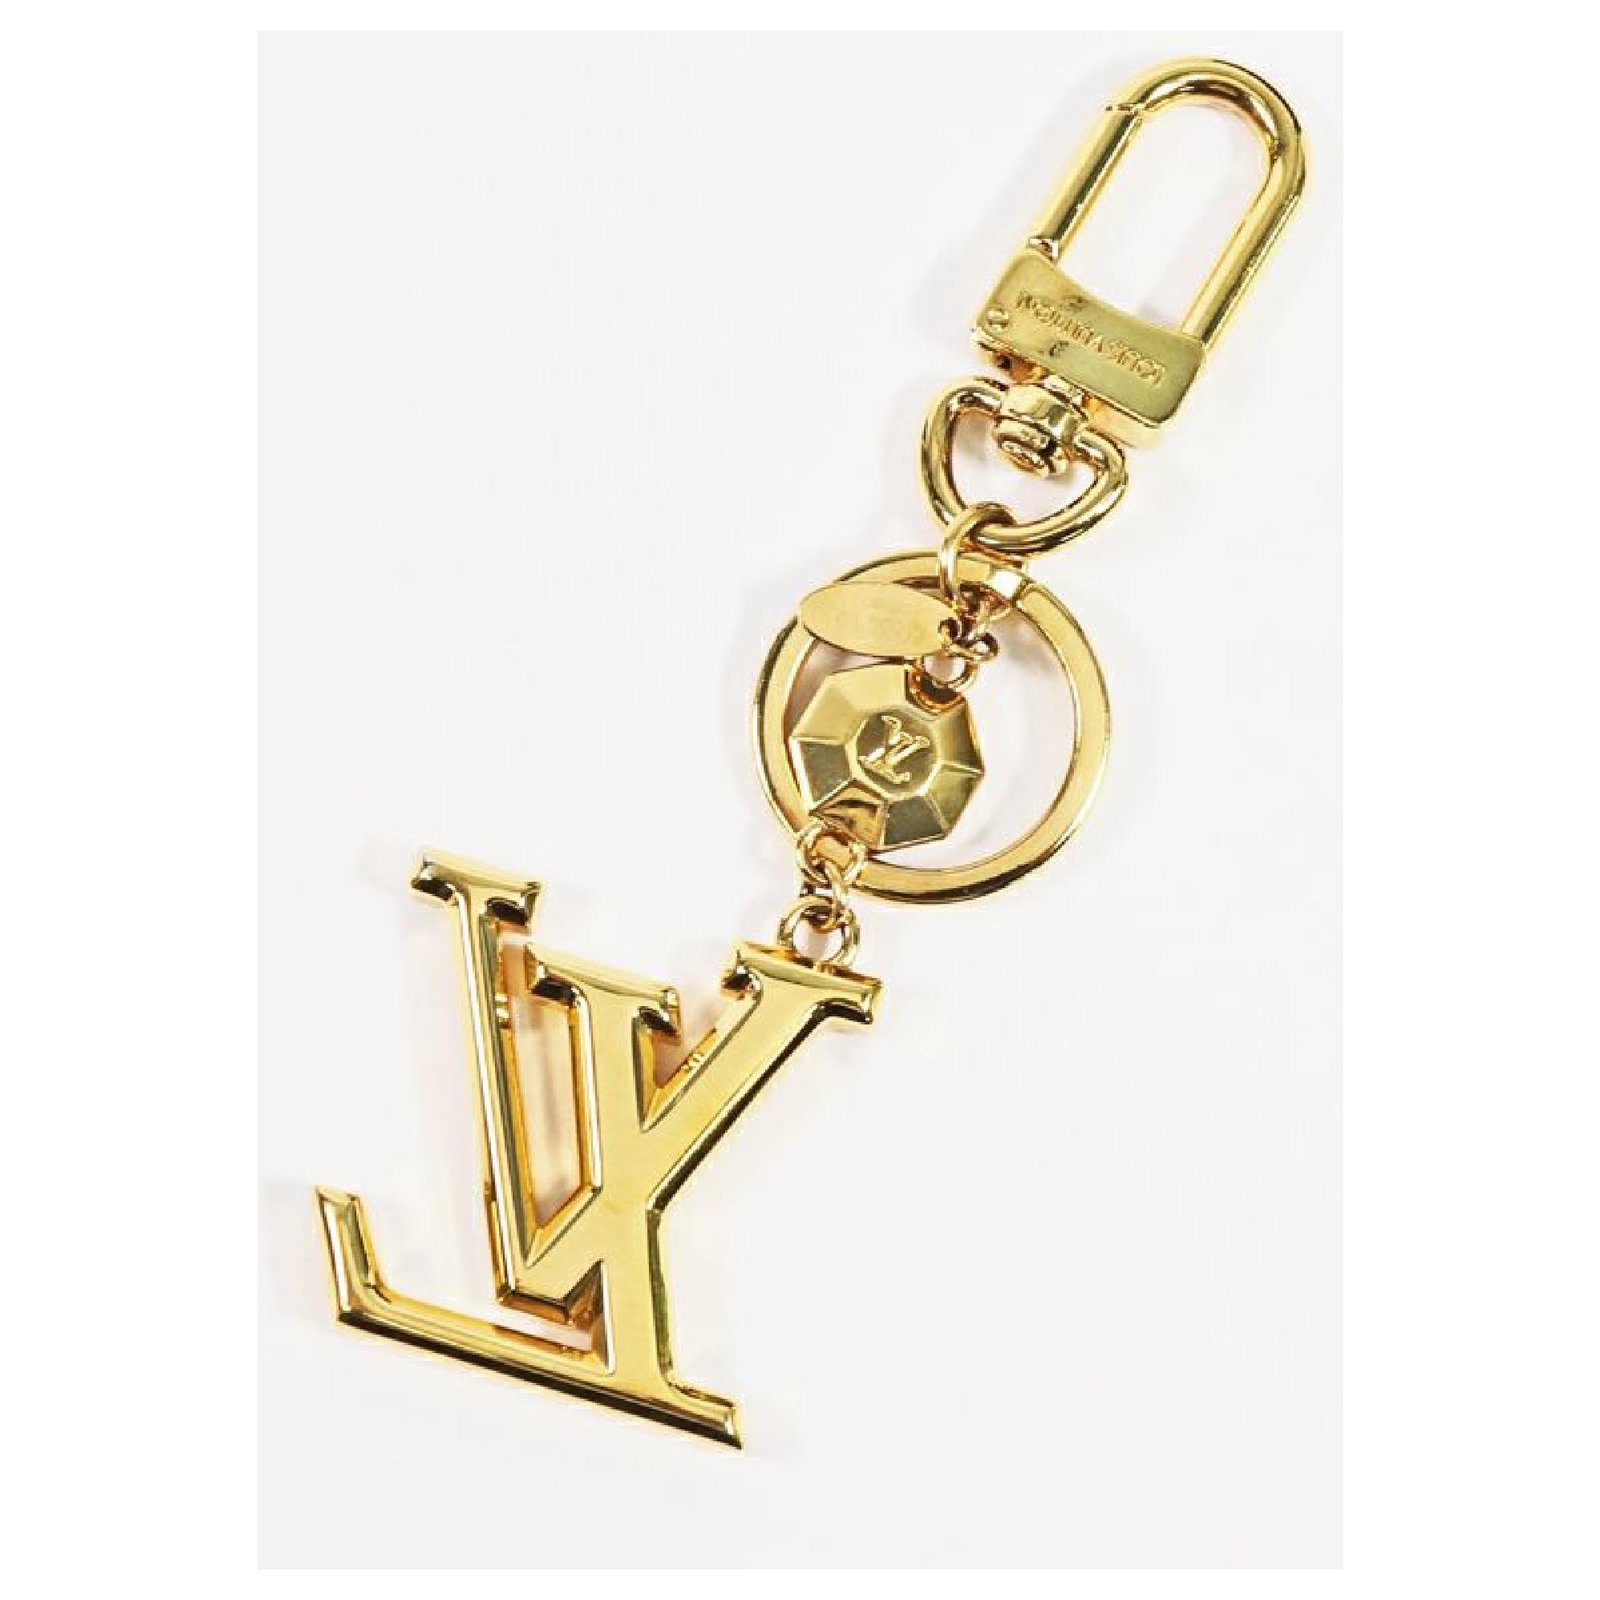 Louis Vuitton Kleinlederwaren Gold - 35571876